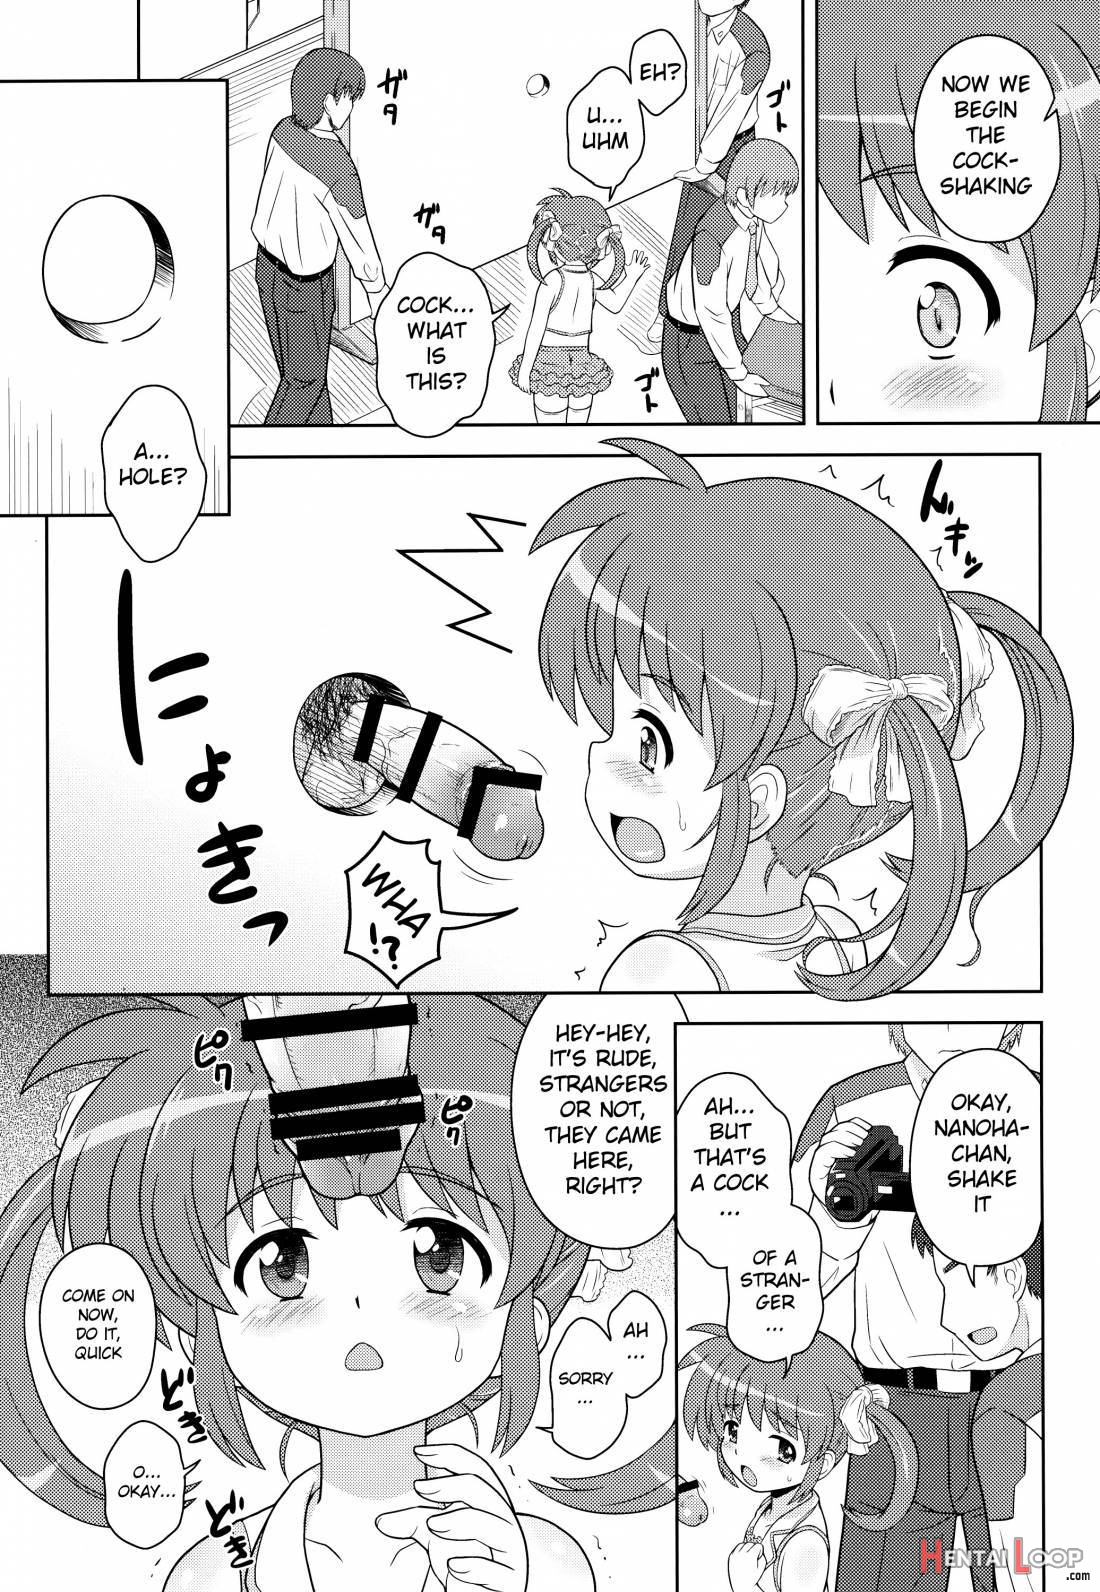 Nanoha-chan Ana page 4